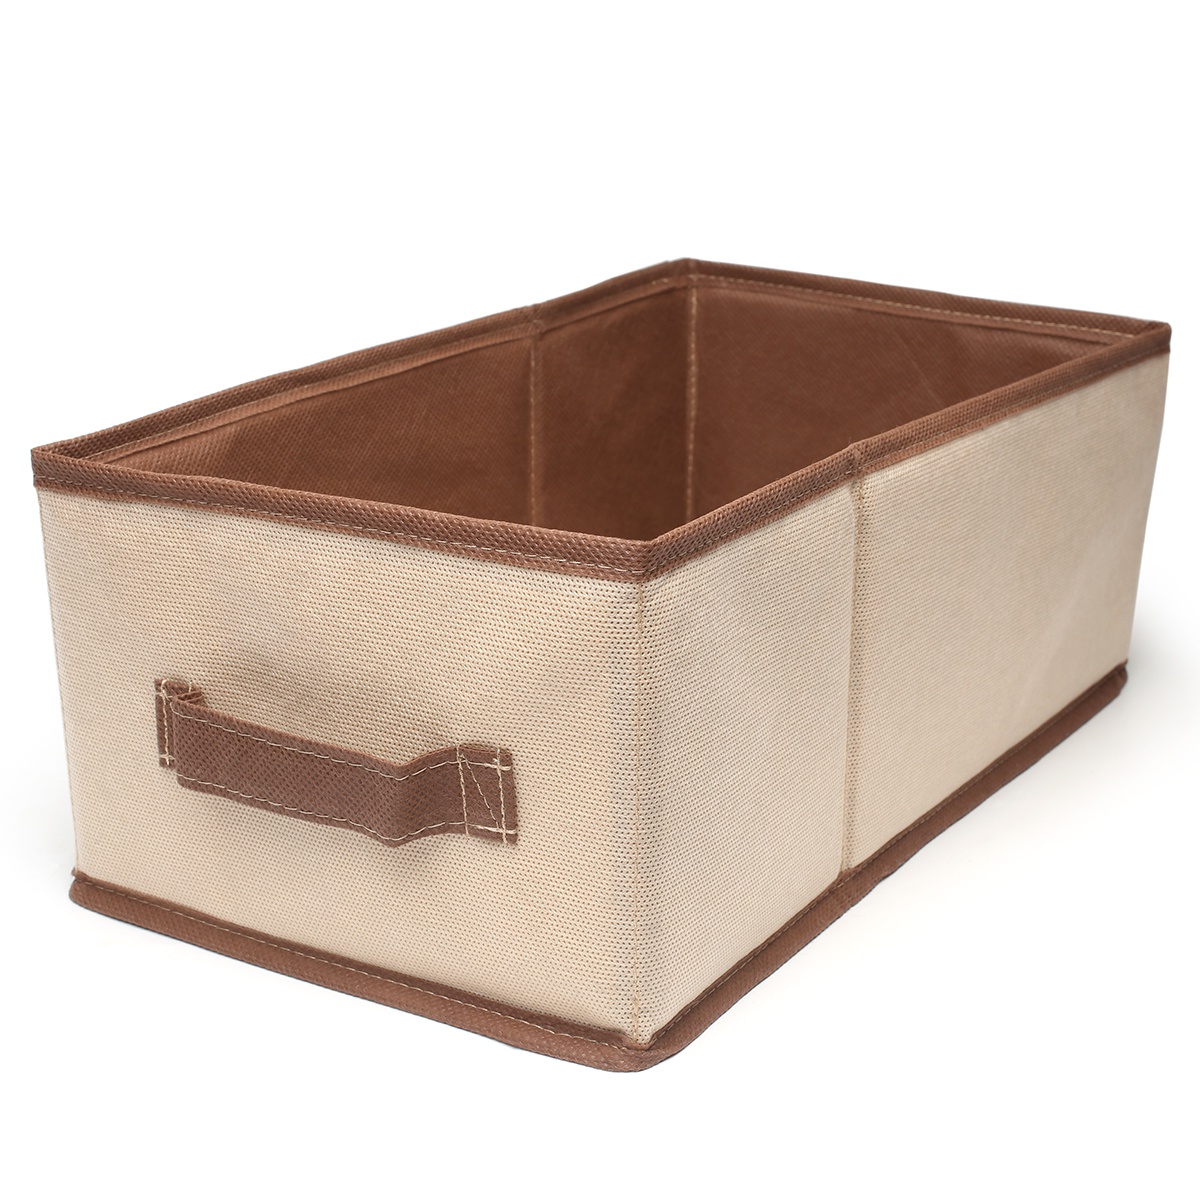 Коробка для хранения belahome M17, бежевый, коричневый